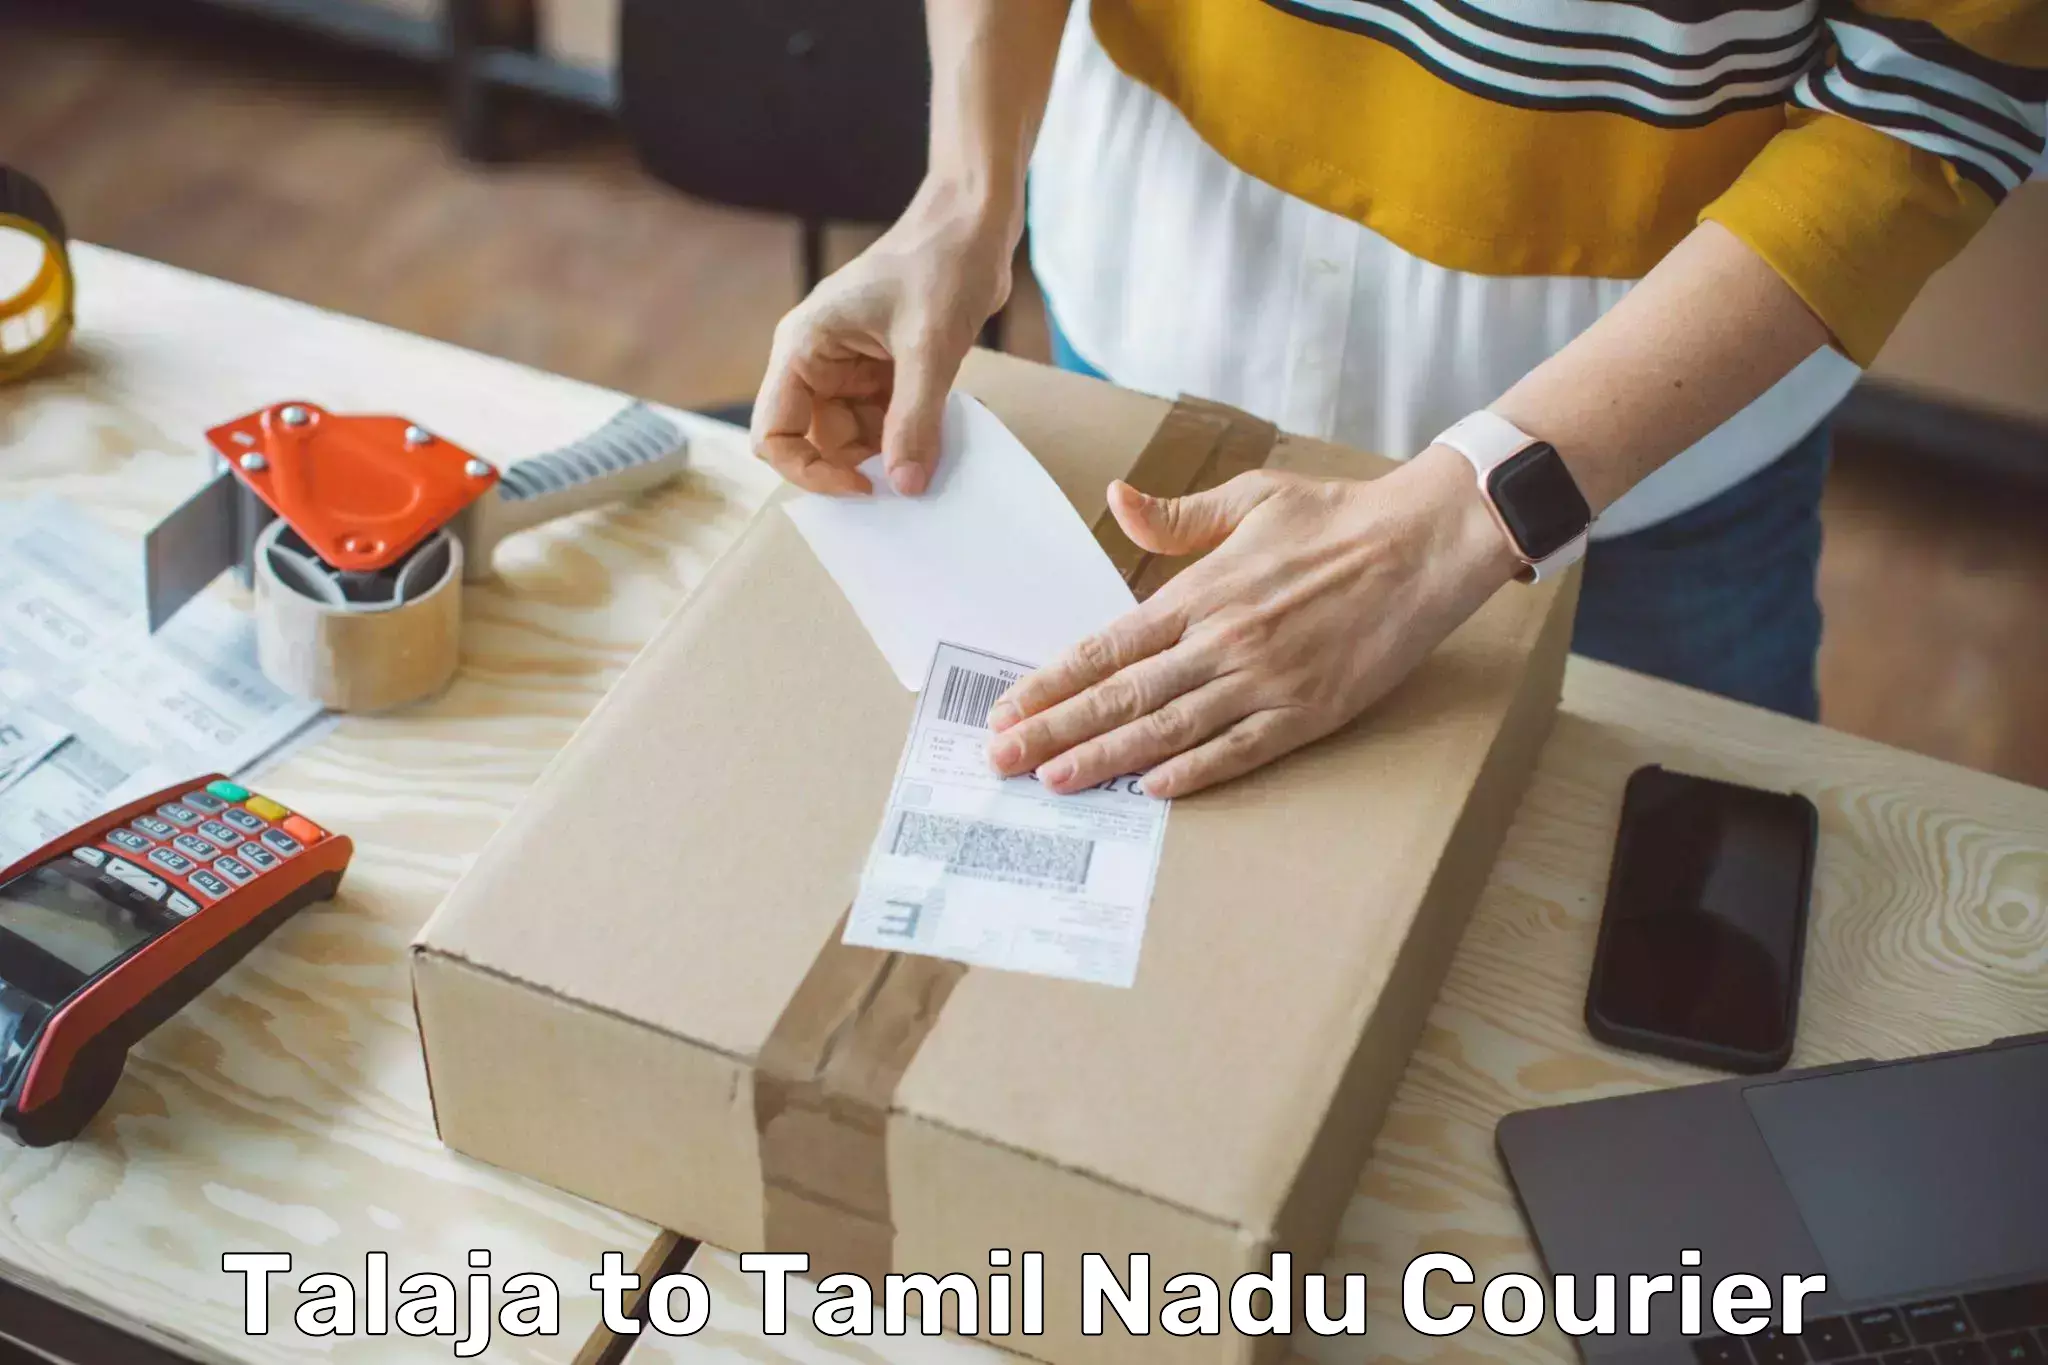 Smart logistics solutions Talaja to Tamil Nadu